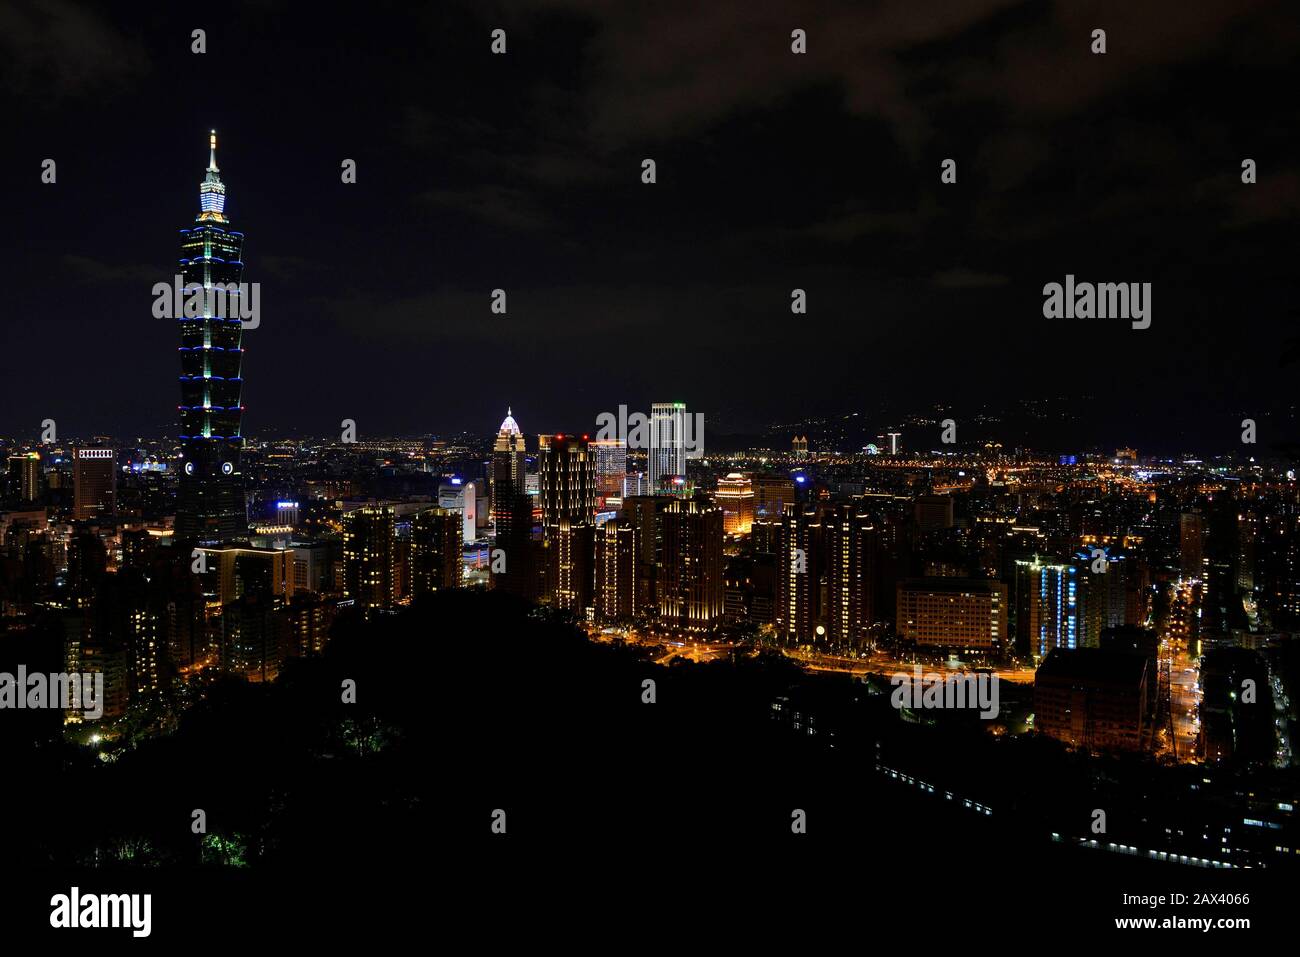 Gratte-ciel Taipei 101 et ses environs vu la nuit d'une colline voisine. Taipei, Taïwan Banque D'Images